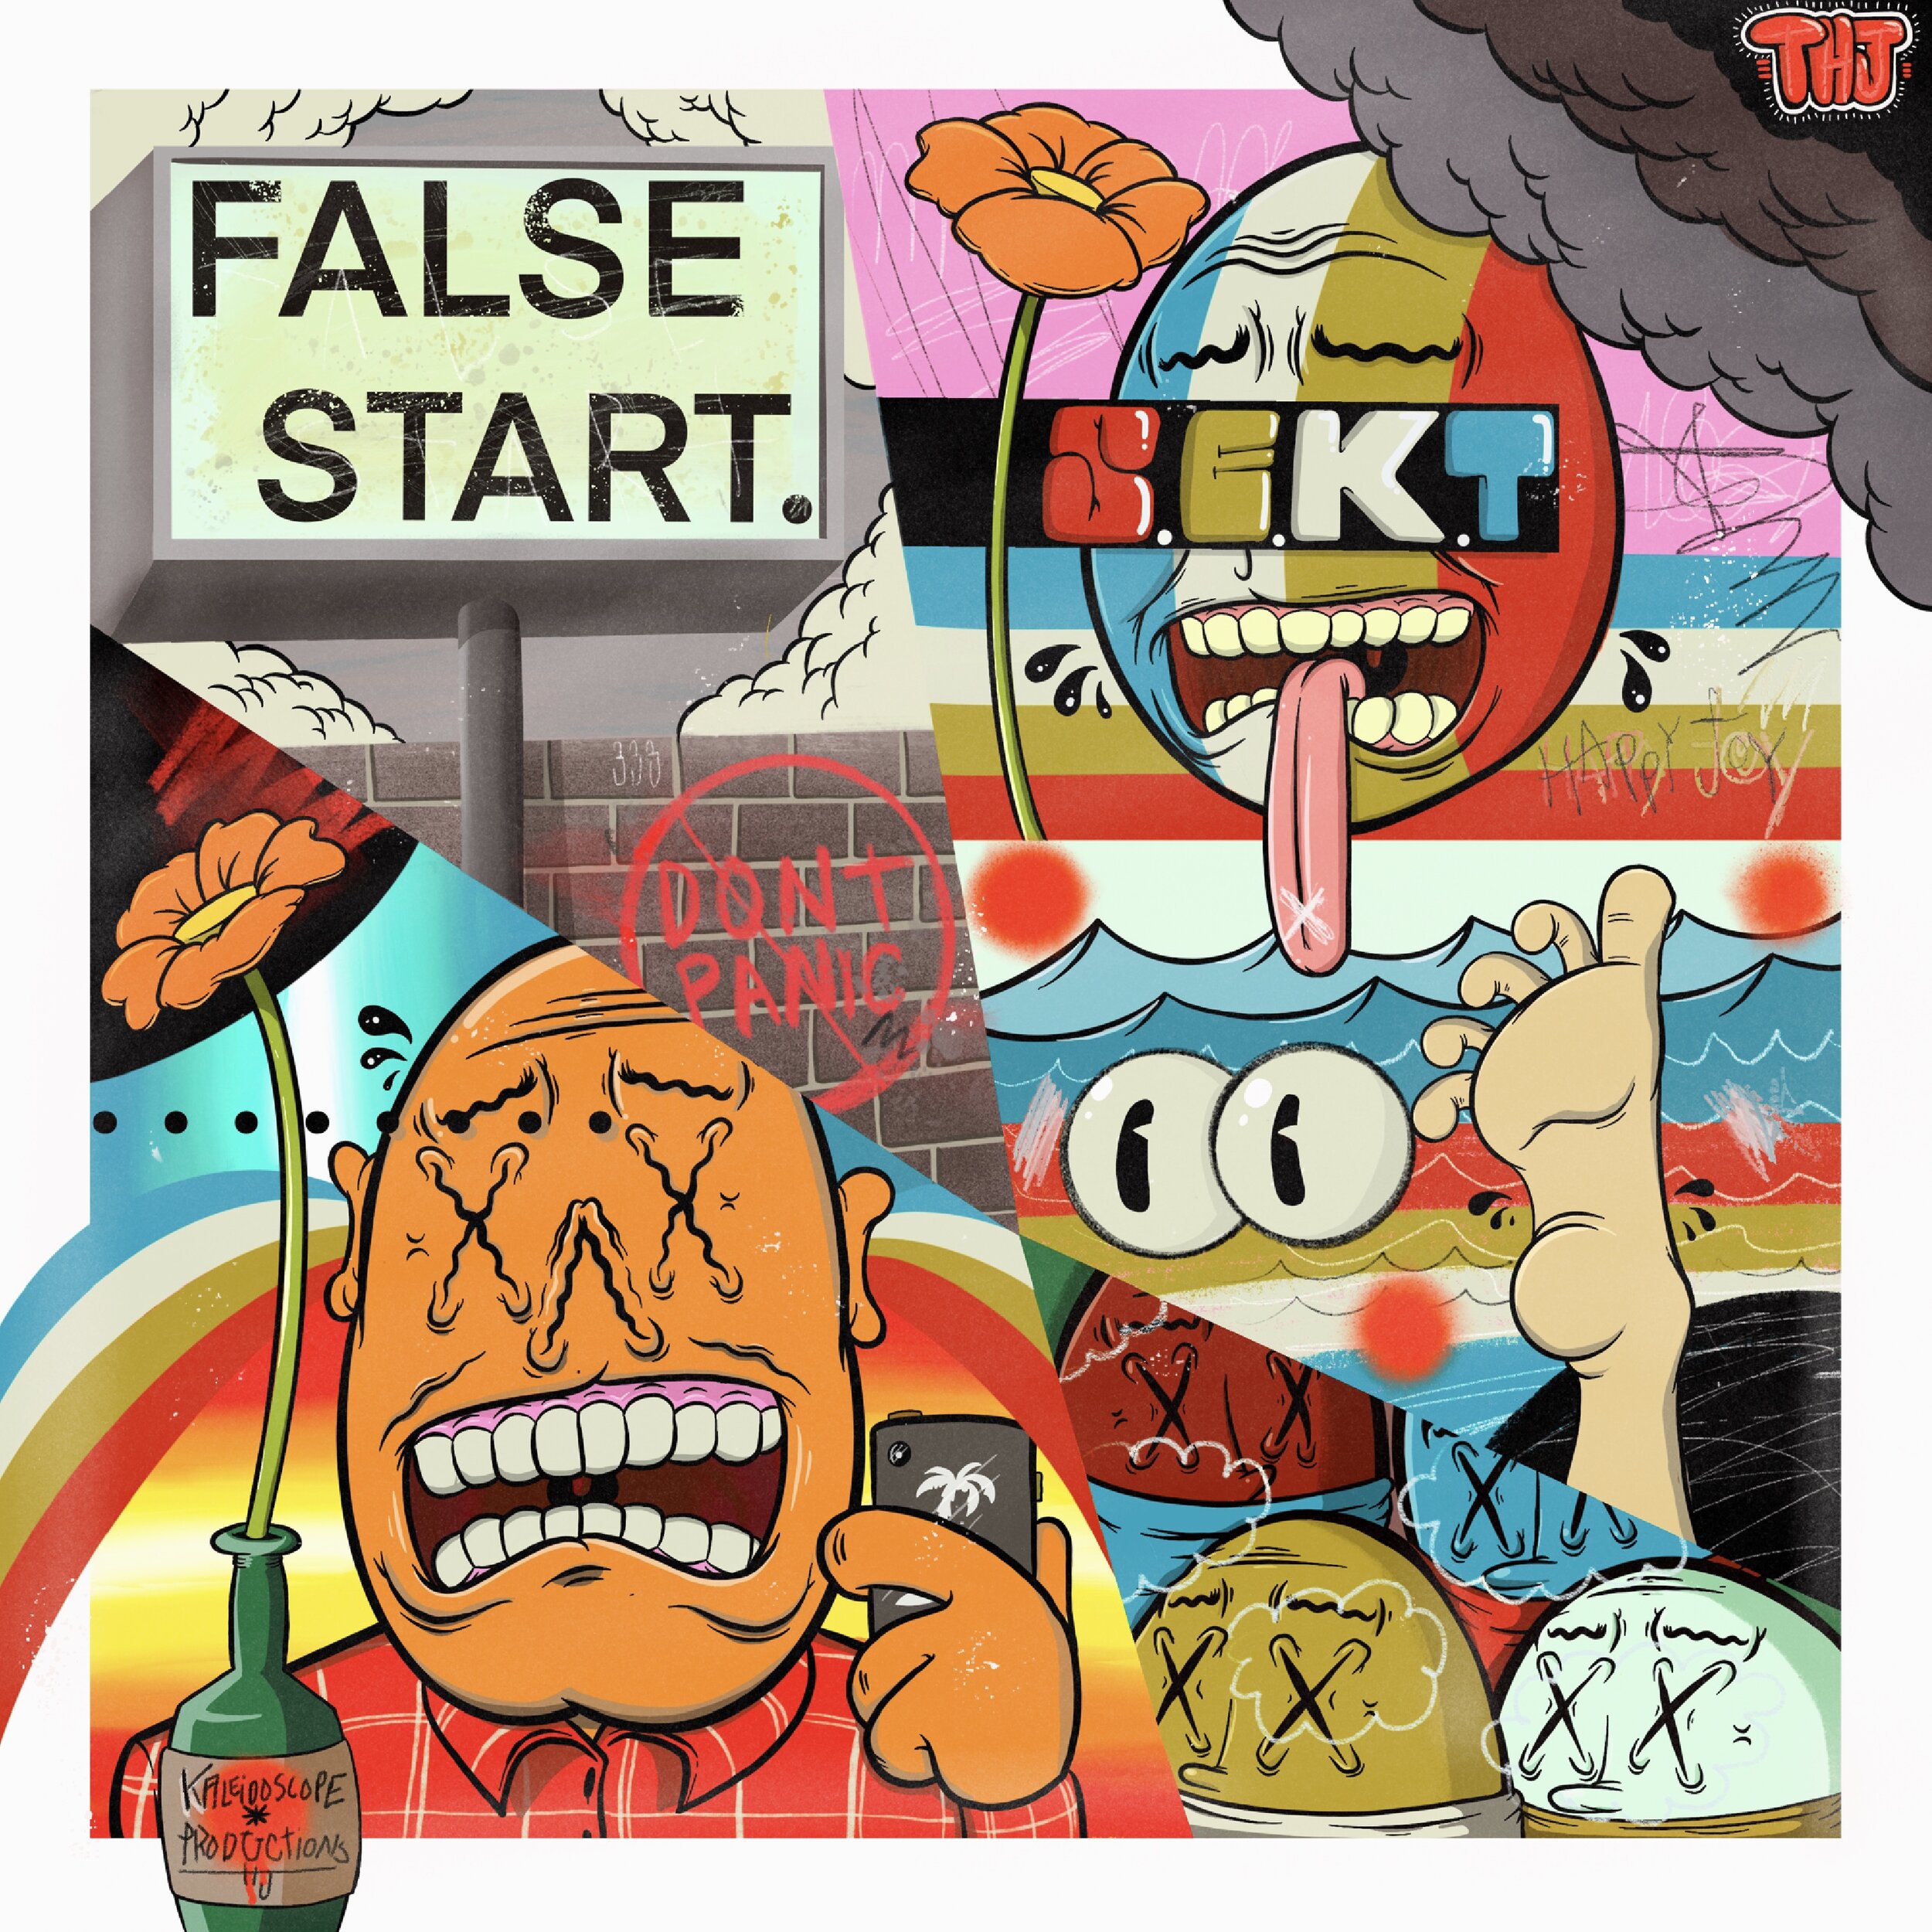 S.E.K.T “False Start” Album Cover